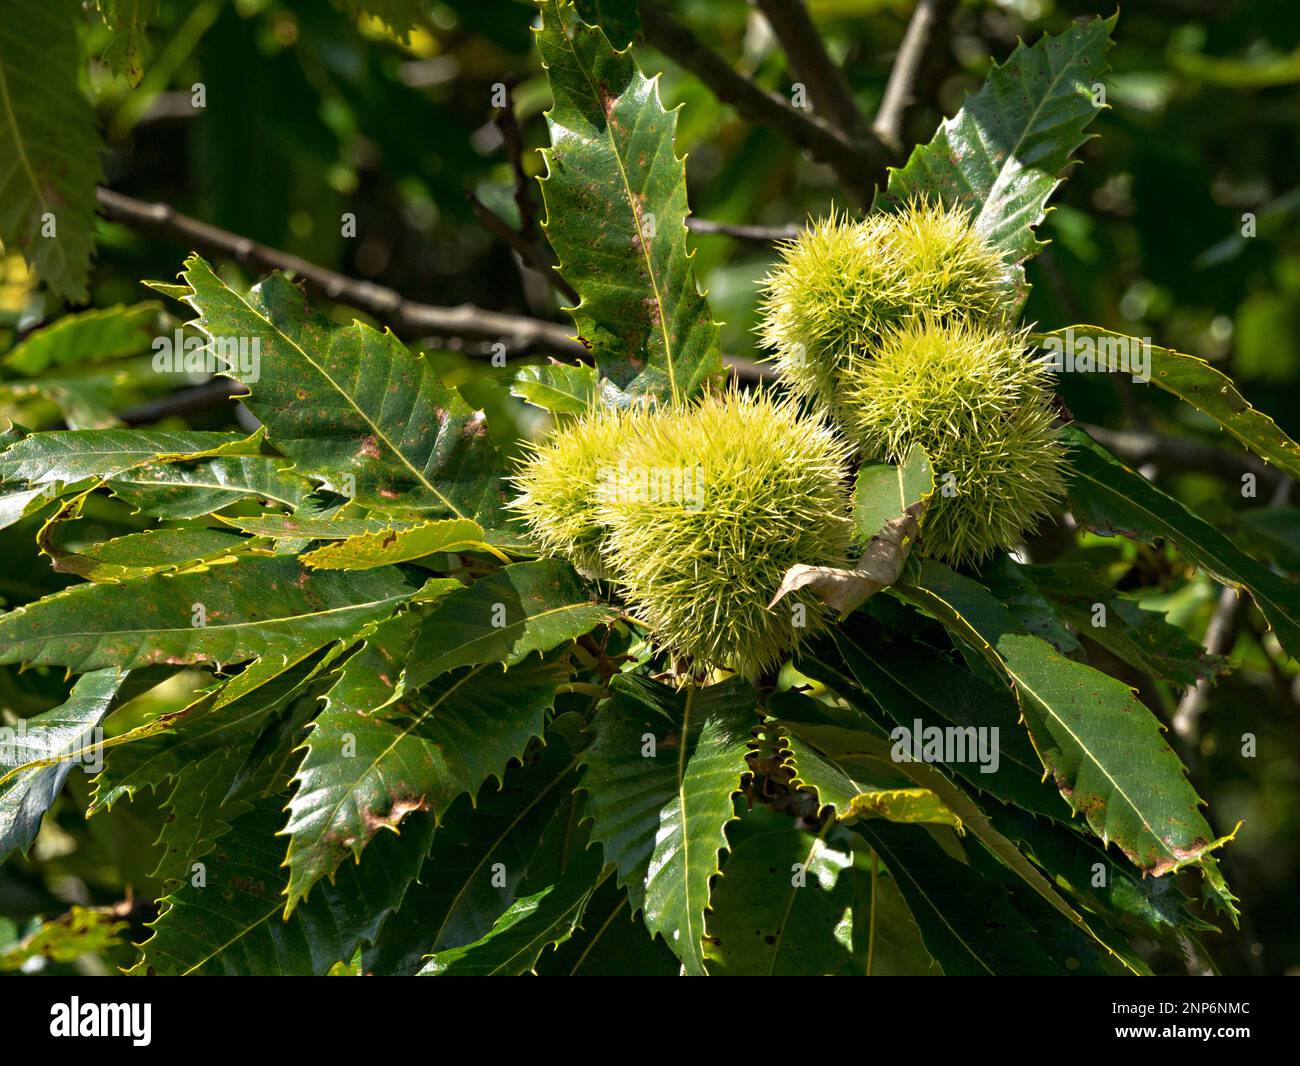 Nahaufnahme der Spiky Sweet Chestnut (Castenea sativa) Früchte, die im September auf Bäumen mit Blättern wachsen, Bradgate Park Leicestershire, England, Vereinigtes Königreich Stockfoto